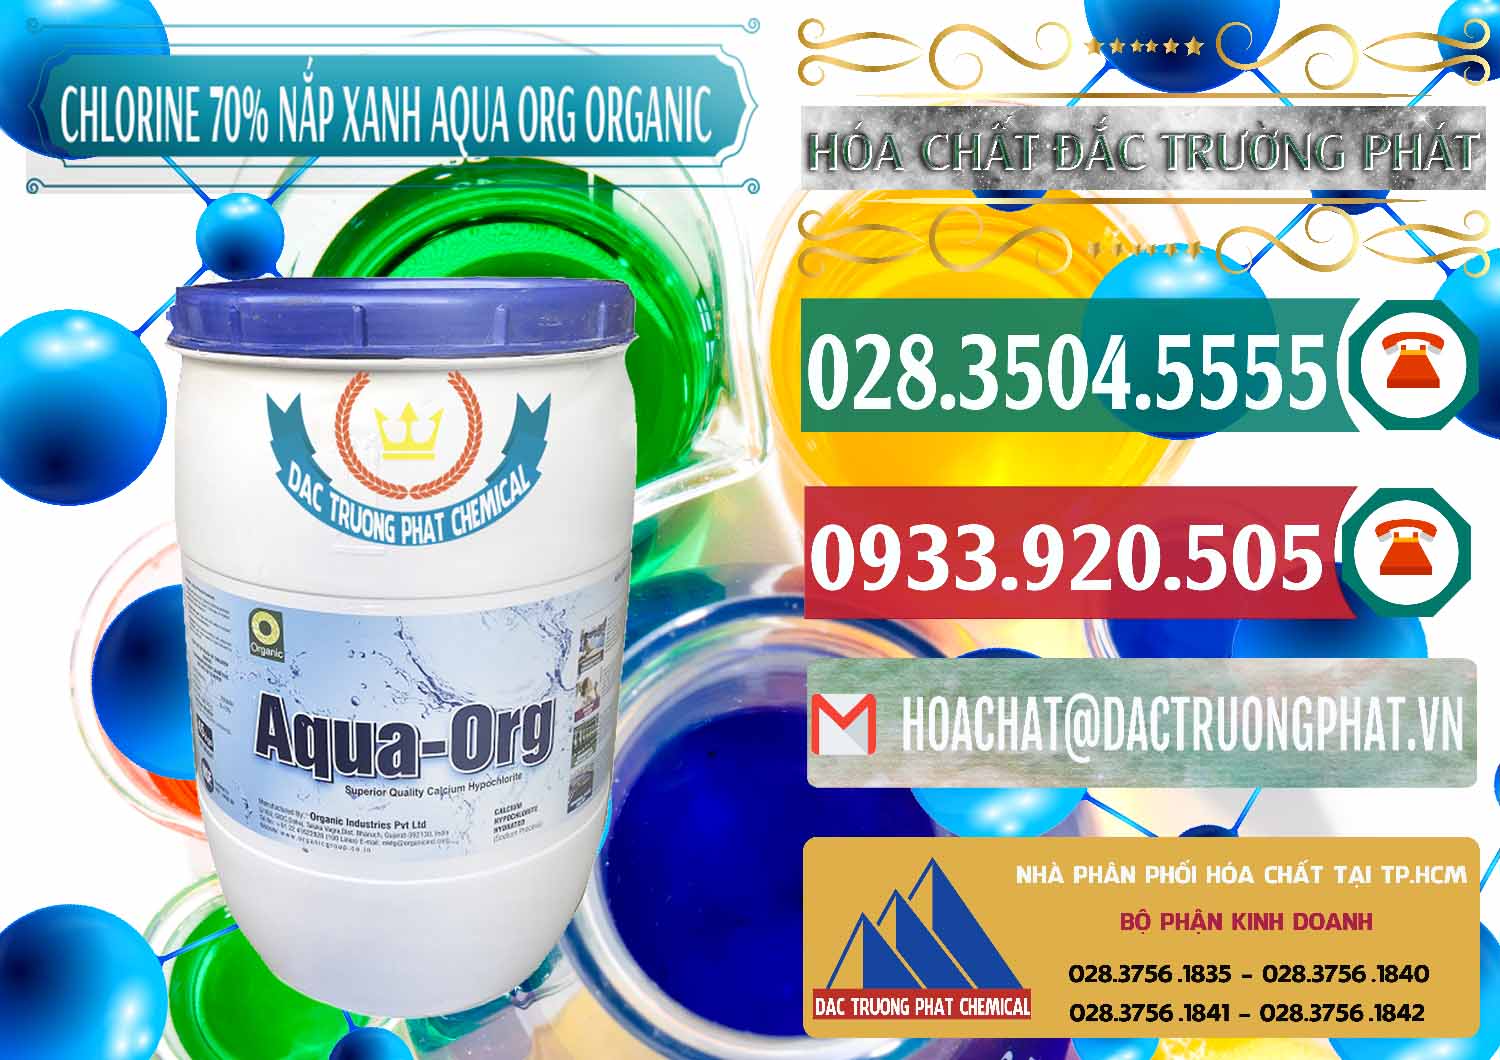 Nơi chuyên kinh doanh & bán Chlorine – Clorin 70% Thùng Tròn Nắp Xanh Aqua ORG Organic Ấn Độ India - 0247 - Cty chuyên cung cấp - bán hóa chất tại TP.HCM - muabanhoachat.vn